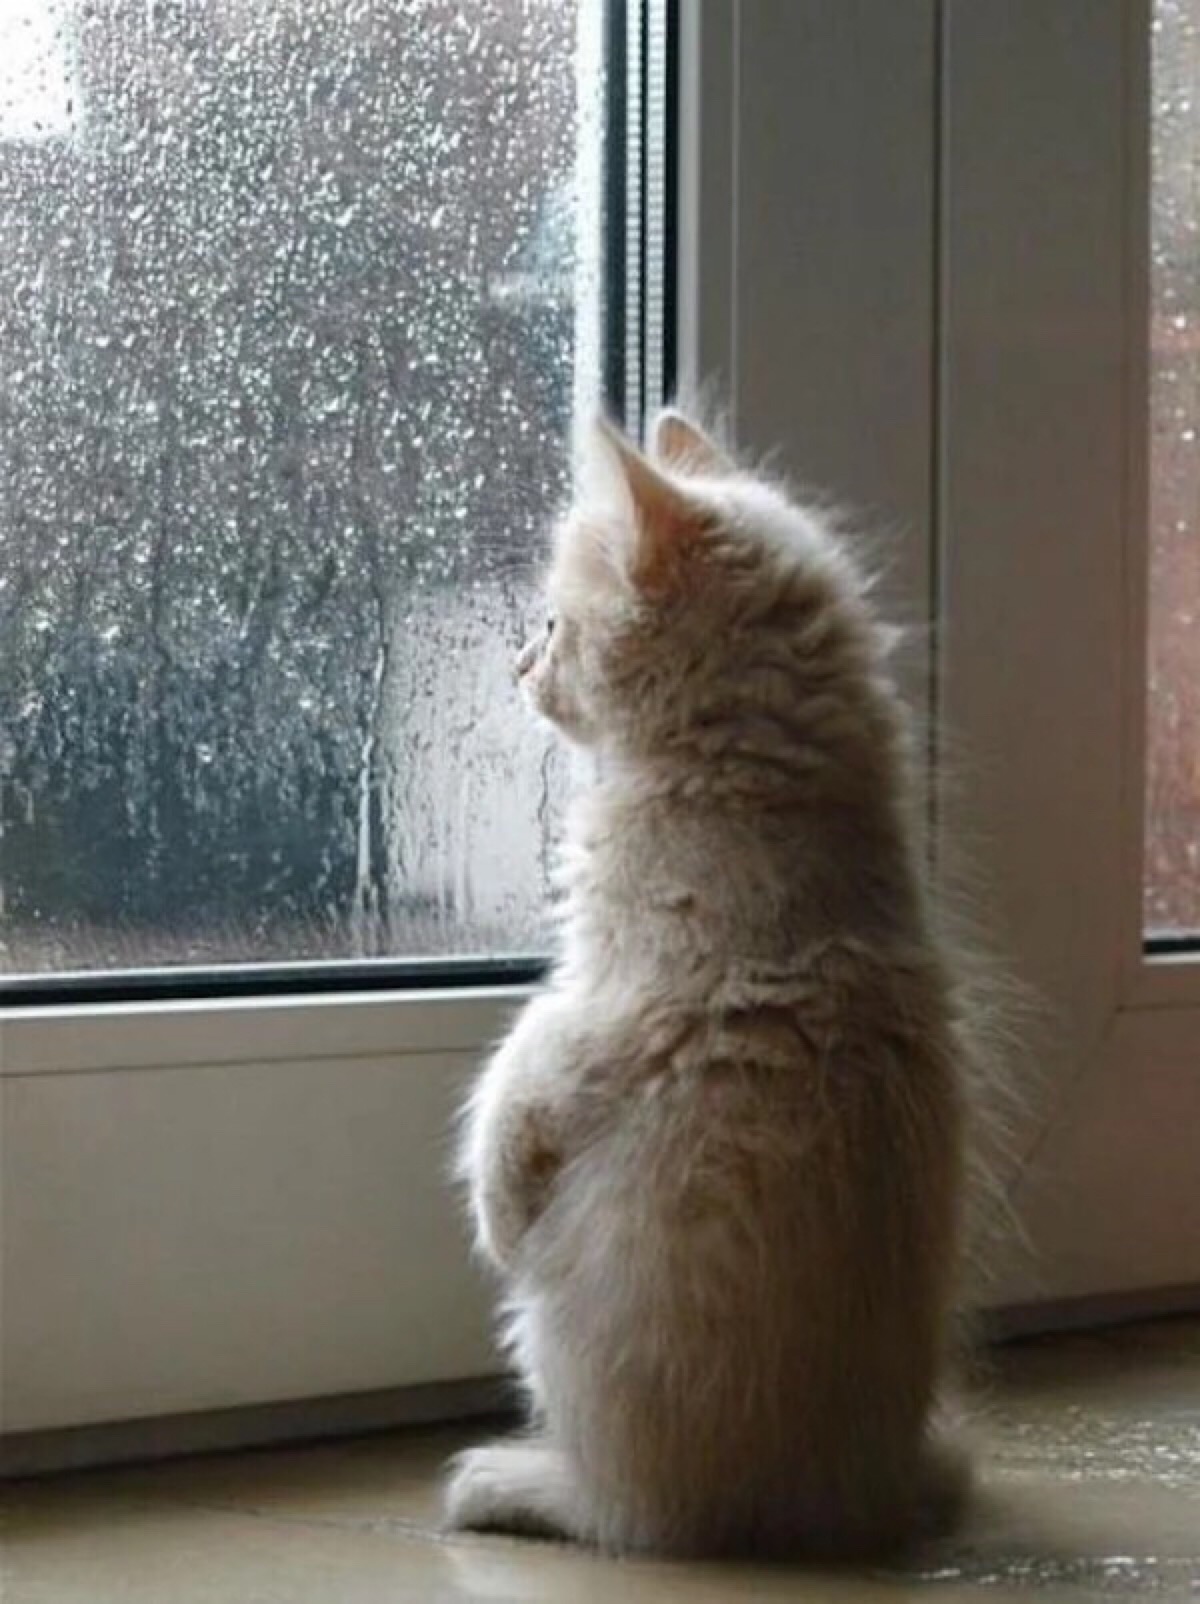 每当下雨,我都会静静的站在窗前思考人生